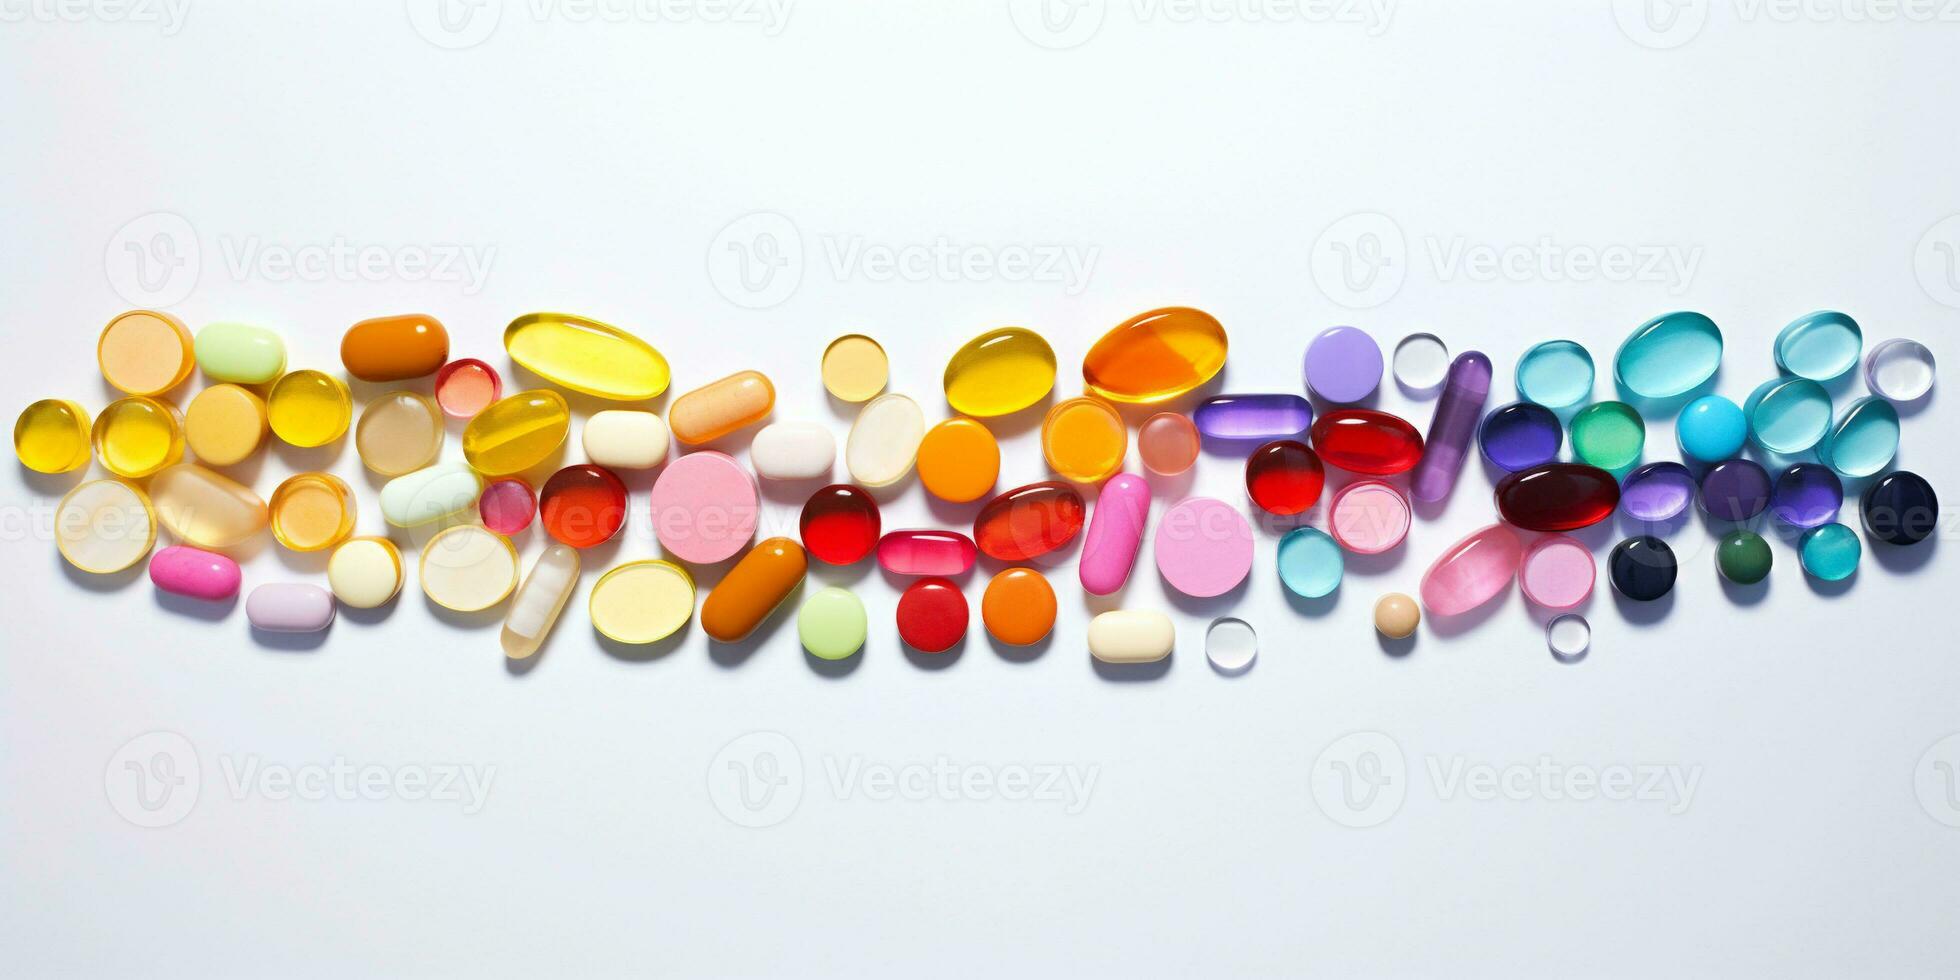 tablets en capsules in allemaal kleuren van de regenboog. banier voor farmaceutisch toevoegen foto